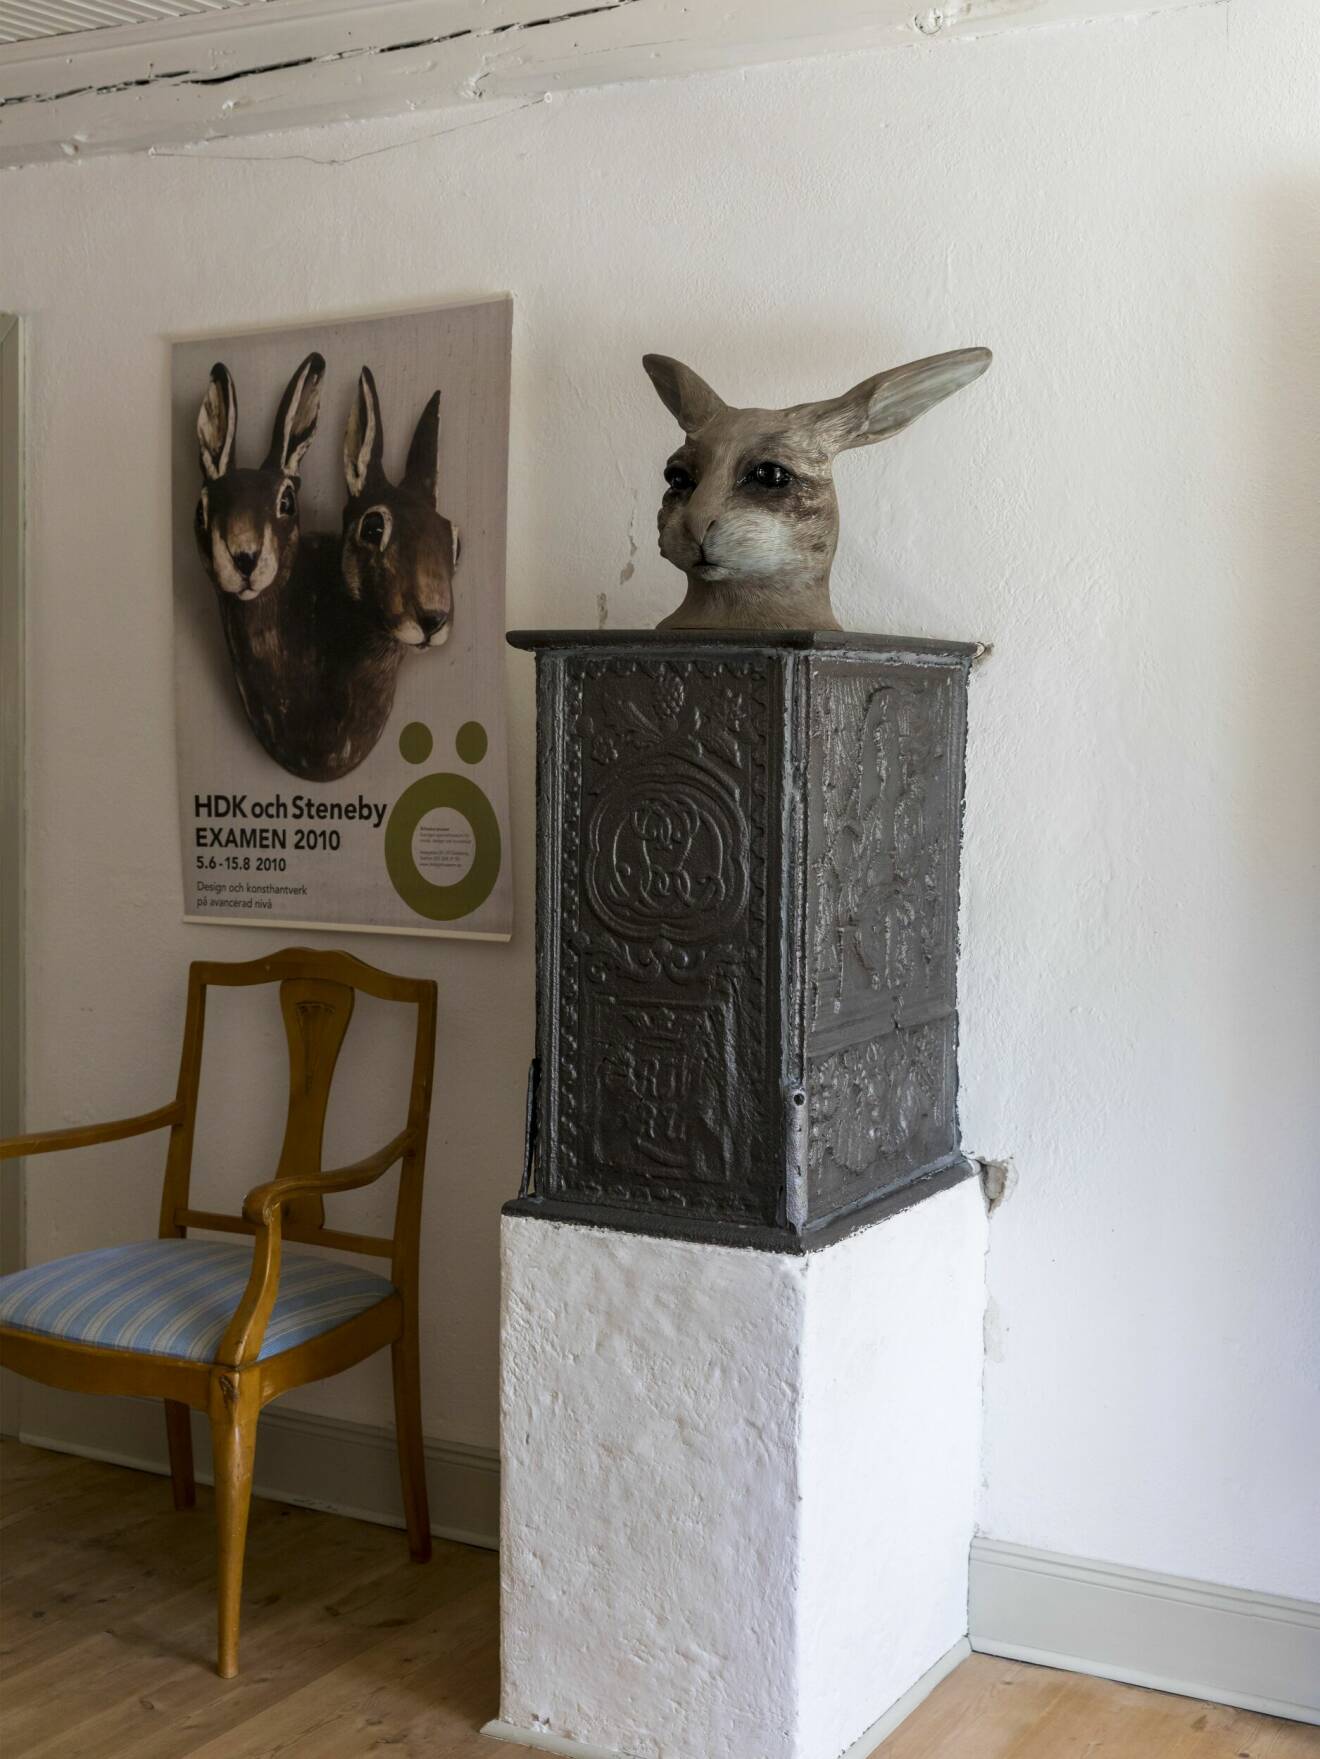 Staty av en hare och en affisch med harar.